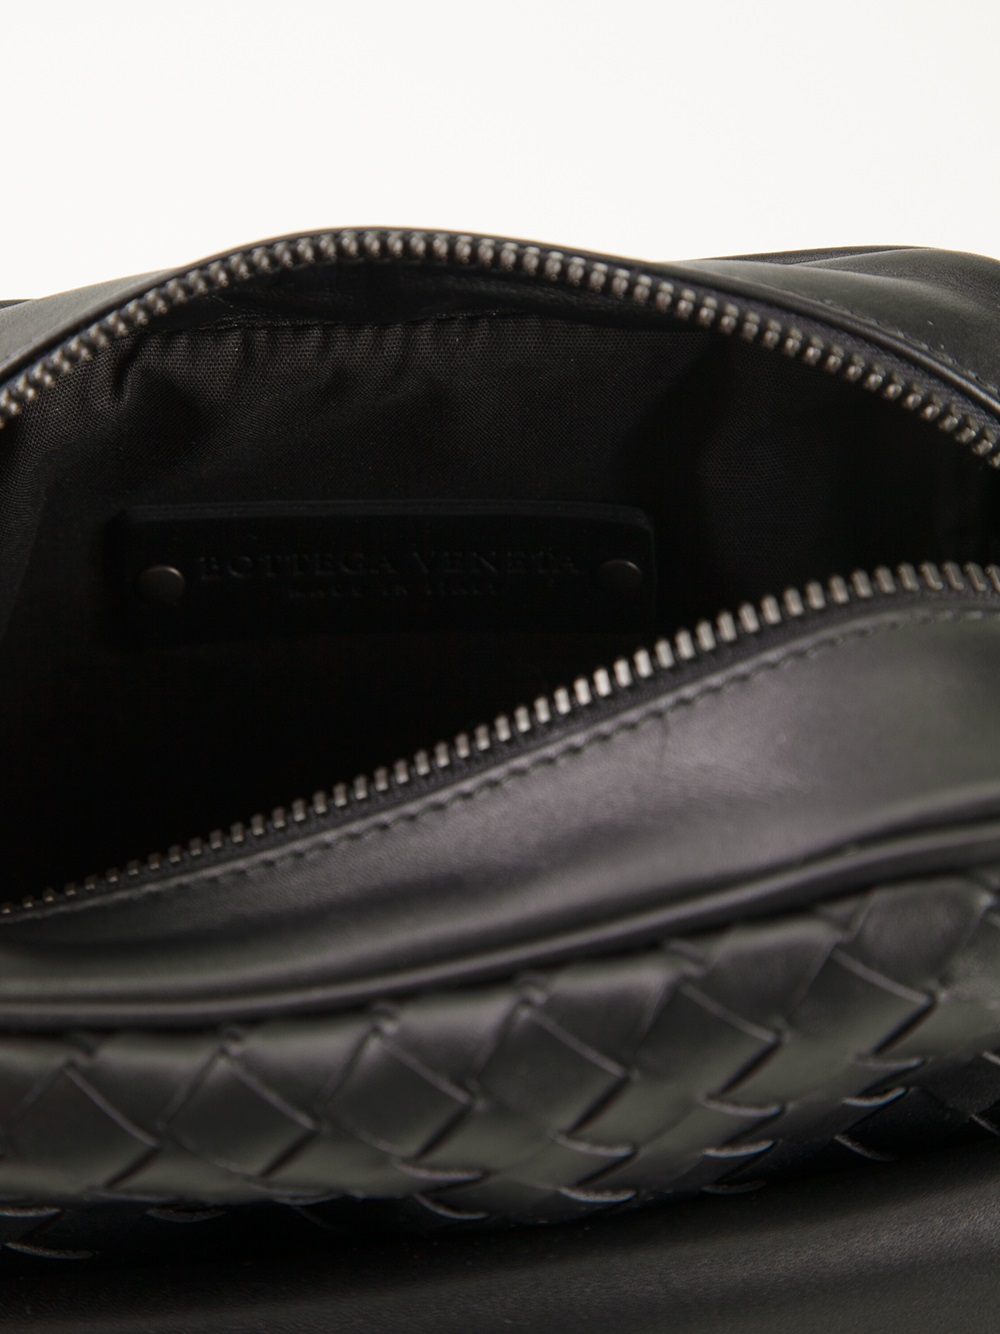 Bottega Veneta Woven Small Messenger Bag in Black for Men - Lyst